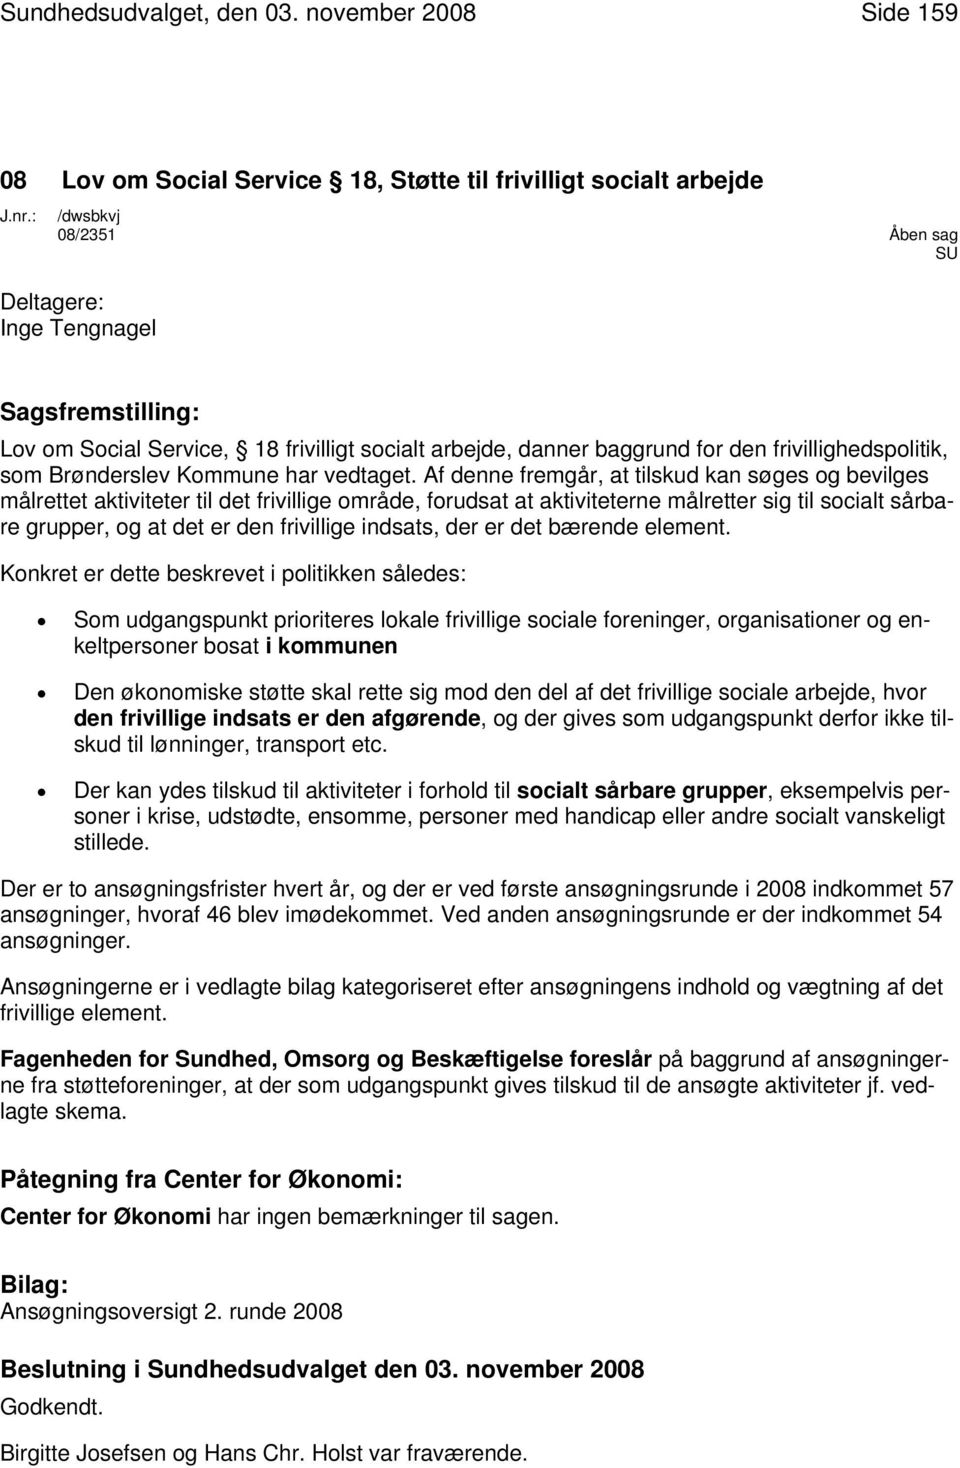 frivillighedspolitik, som Brønderslev Kommune har vedtaget.